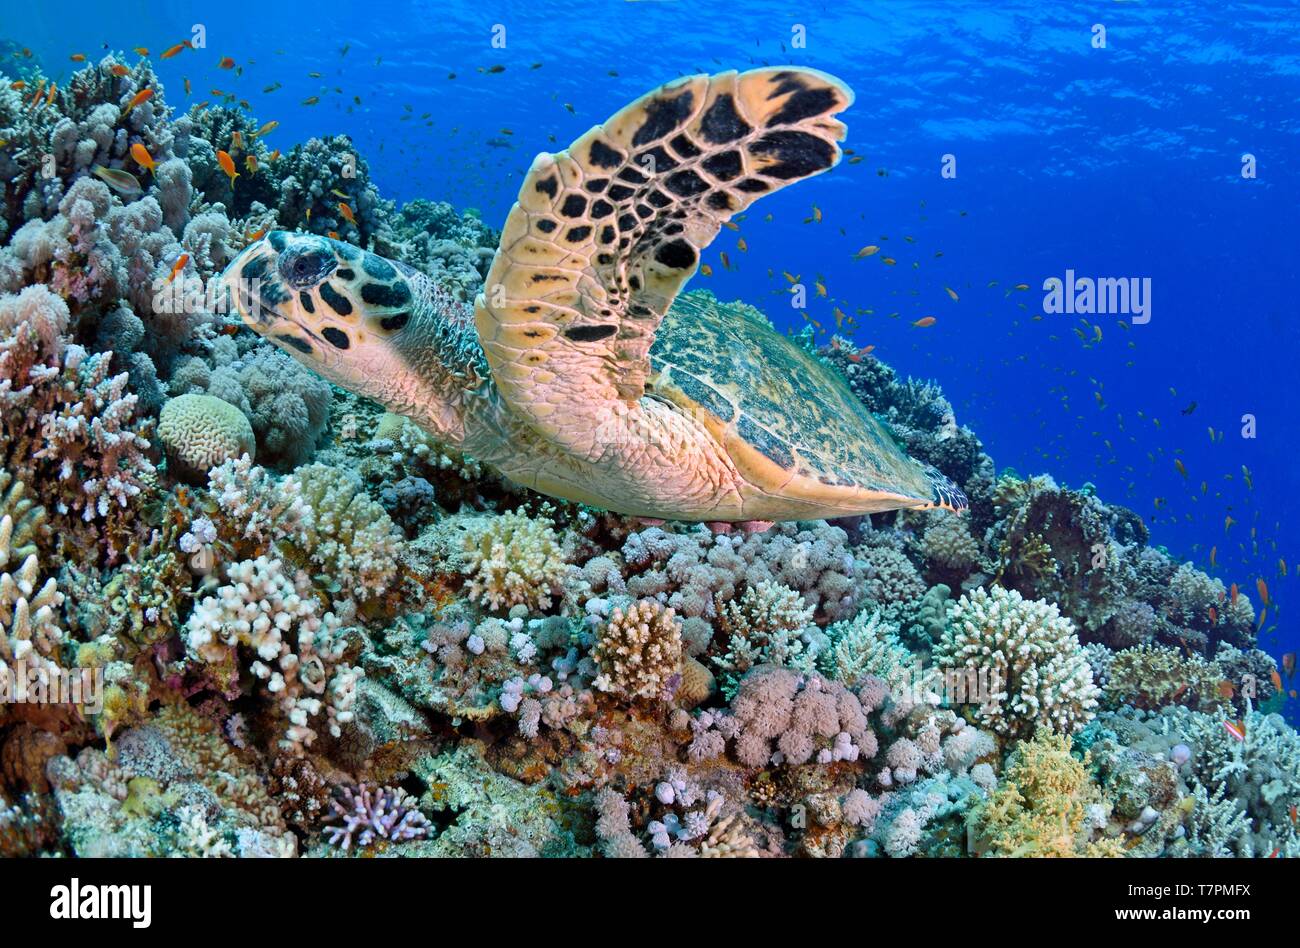 L'Egypte, Mer Rouge, une barrière de corail avec une tortue imbriquée (Eretmochelys imbricata) Banque D'Images